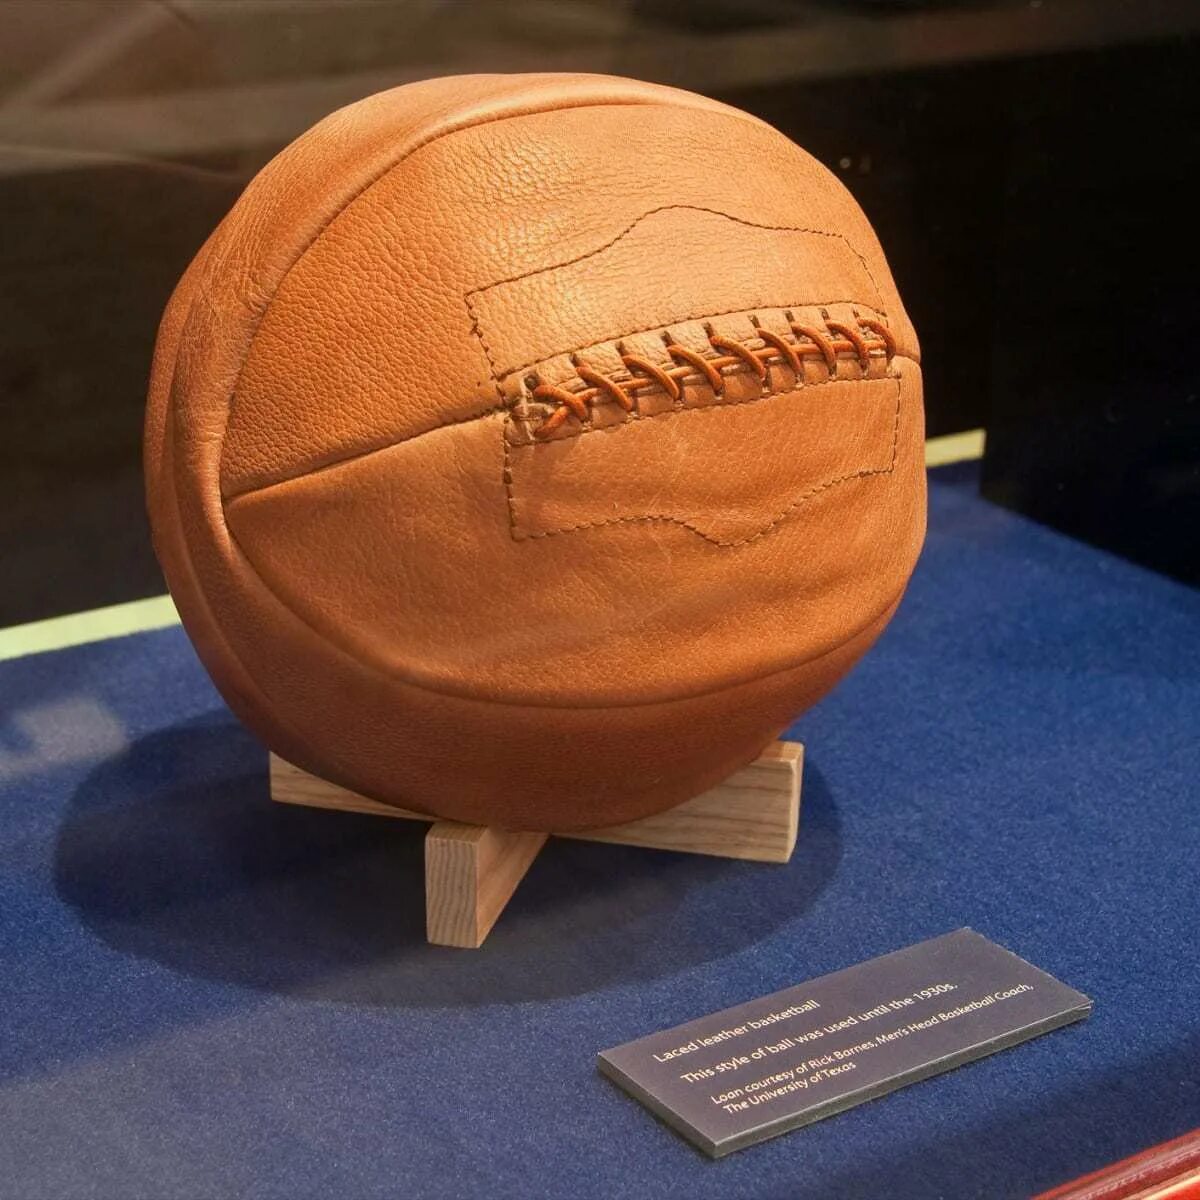 1 мяч в мире. Баскетбольный мяч 1891 года. Первый баскетбольный мяч. Самый первый баскетбольный мяч.